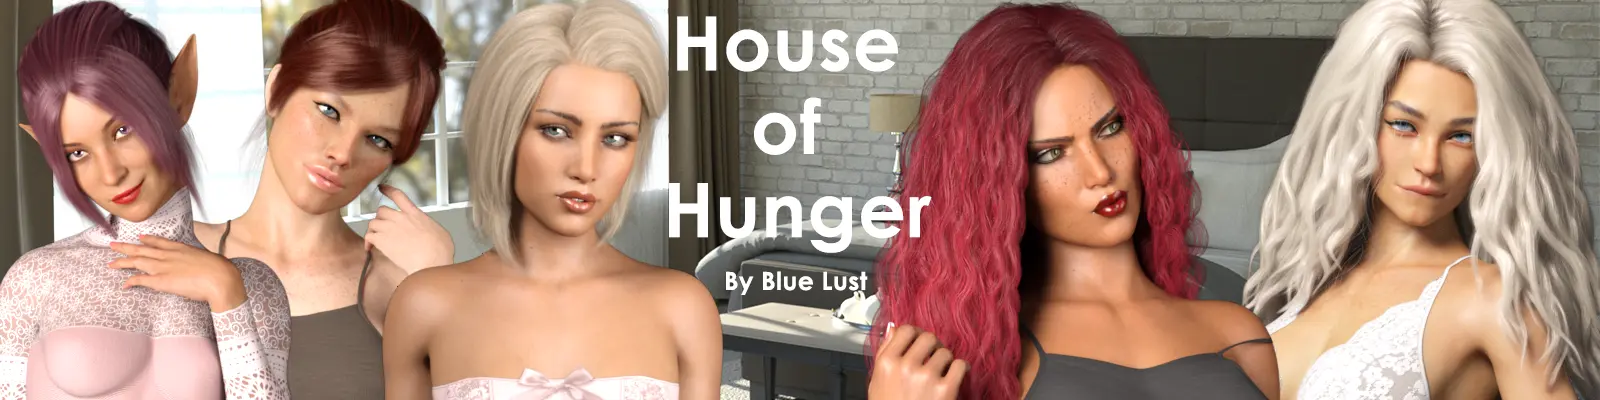 House of Hunger [v0.1] main image